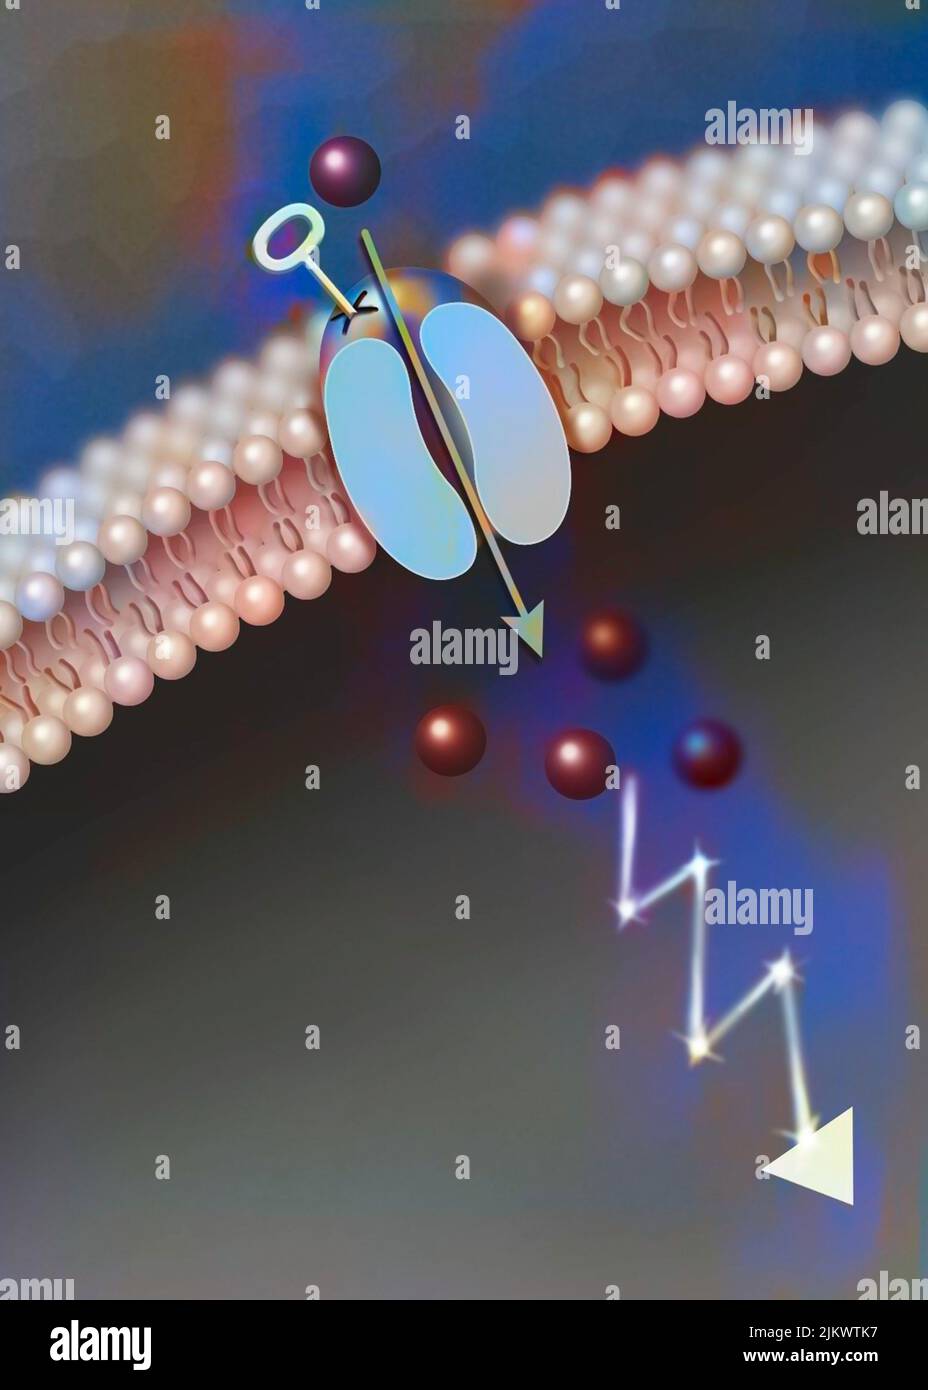 Canale ionico ligando-dipendente: L'attacco di una particolare molecola provoca l'apertura del canale. Foto Stock